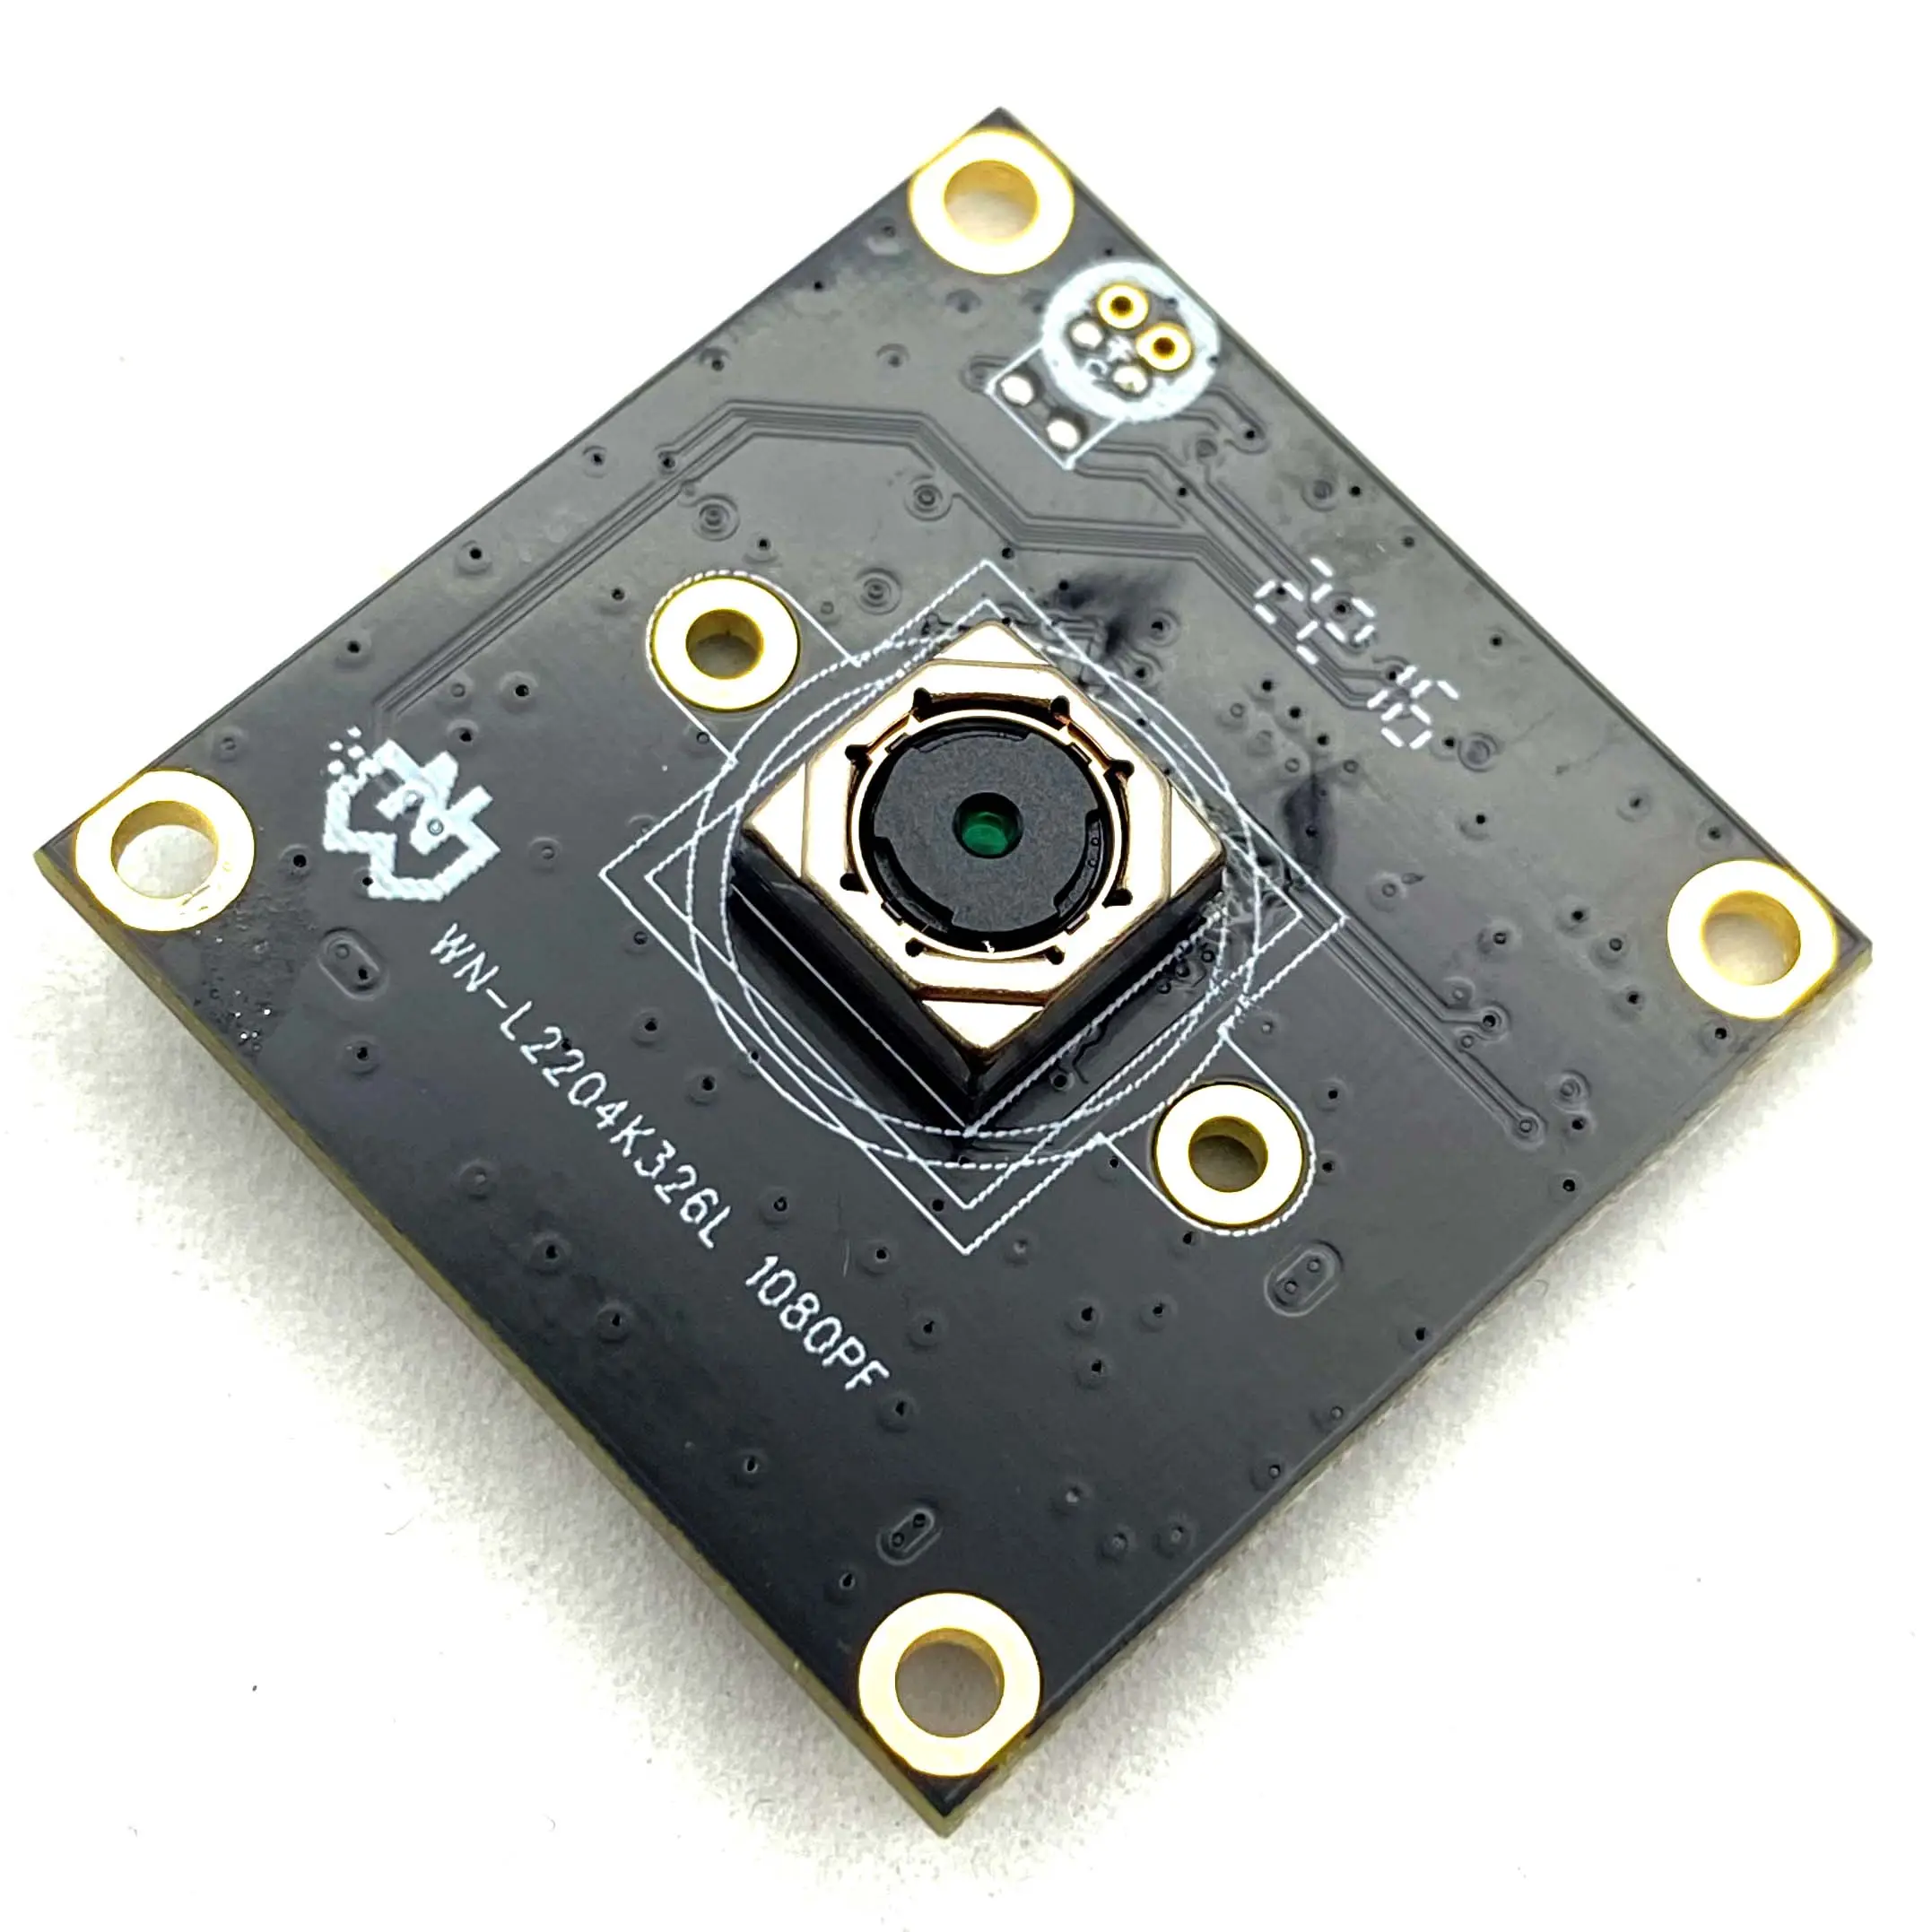 ऑटो फोकस USB कैमरा मॉड्यूल 1/4-इंच CMOS 2MP आईपी इंडोर कैमरा इंडोर Ezviz C6n कैमरा इलेक्ट्रॉनिक रोलिंग शटर न्यूट्रल